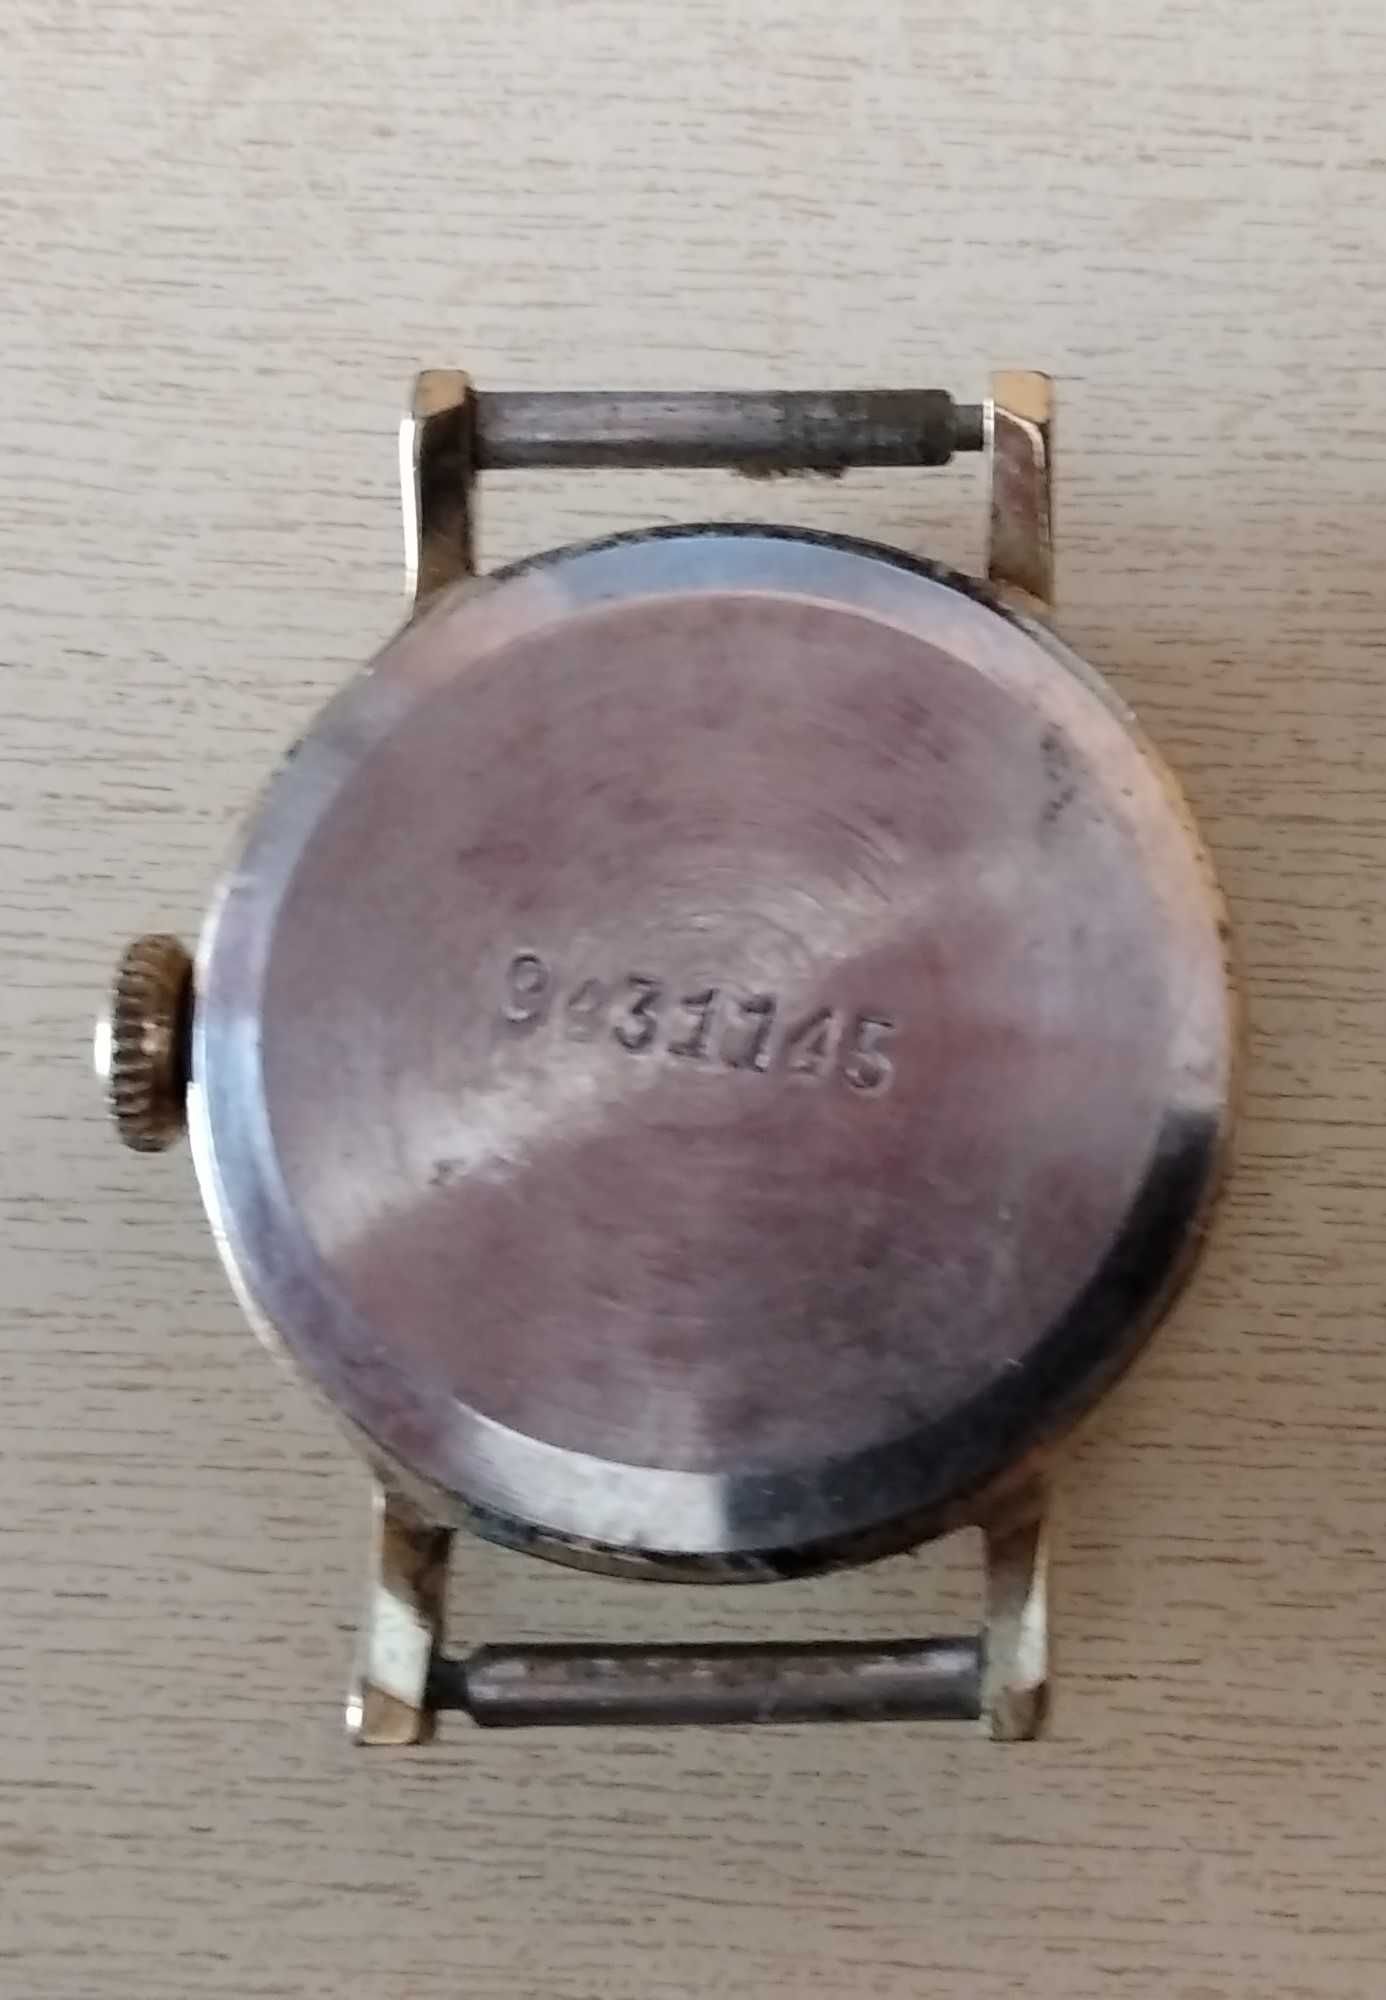 Zegarek damski, radziecki lata 80 - uszkodzony